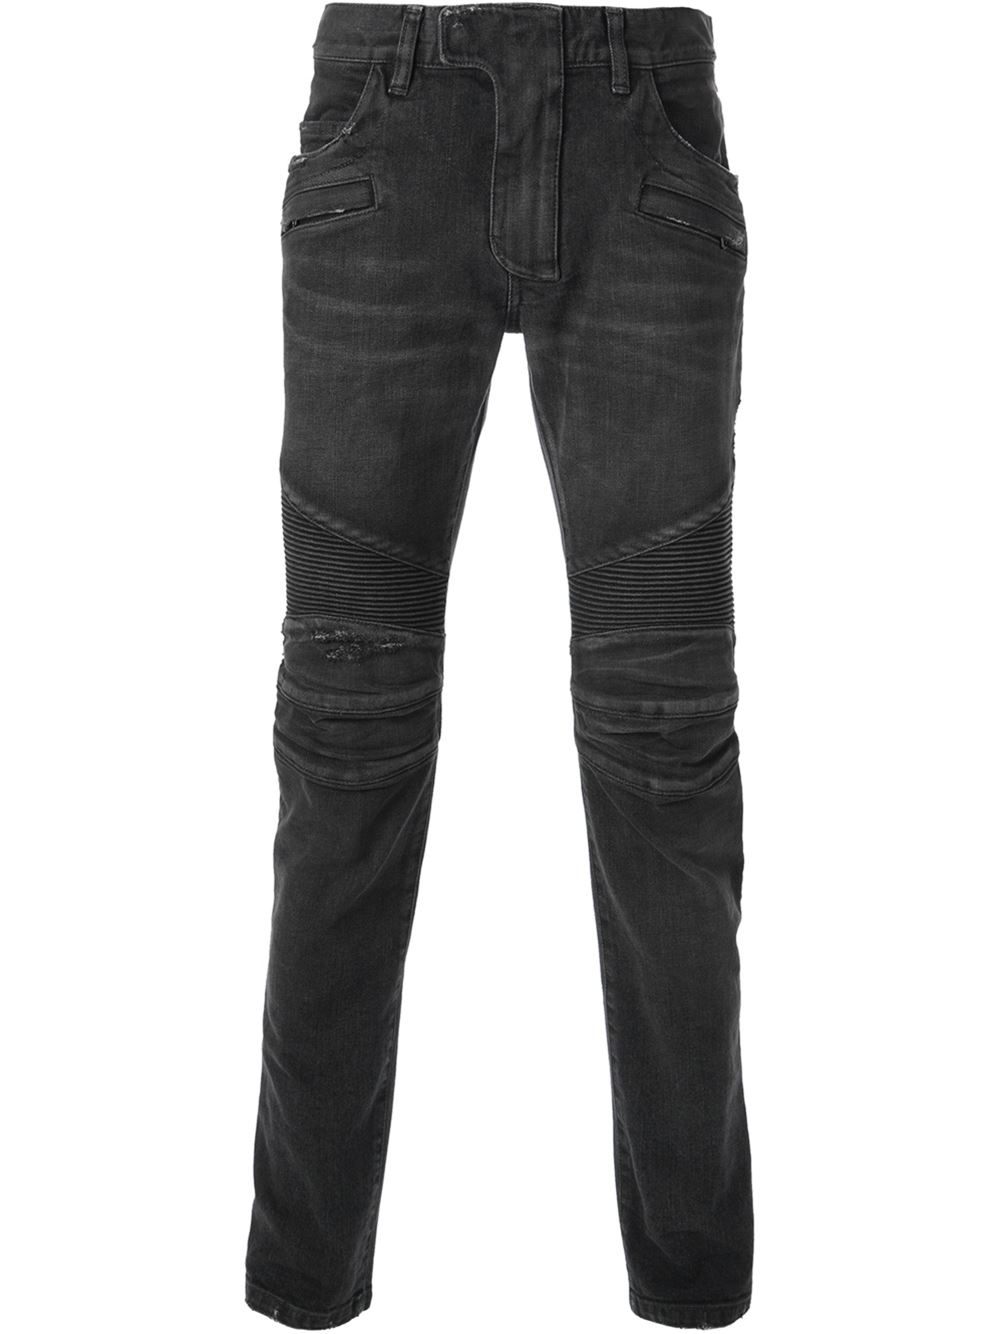 Swizz Beatz’s Instagram $1,142 Balmain Distressed Moto Skinny Jeans ...